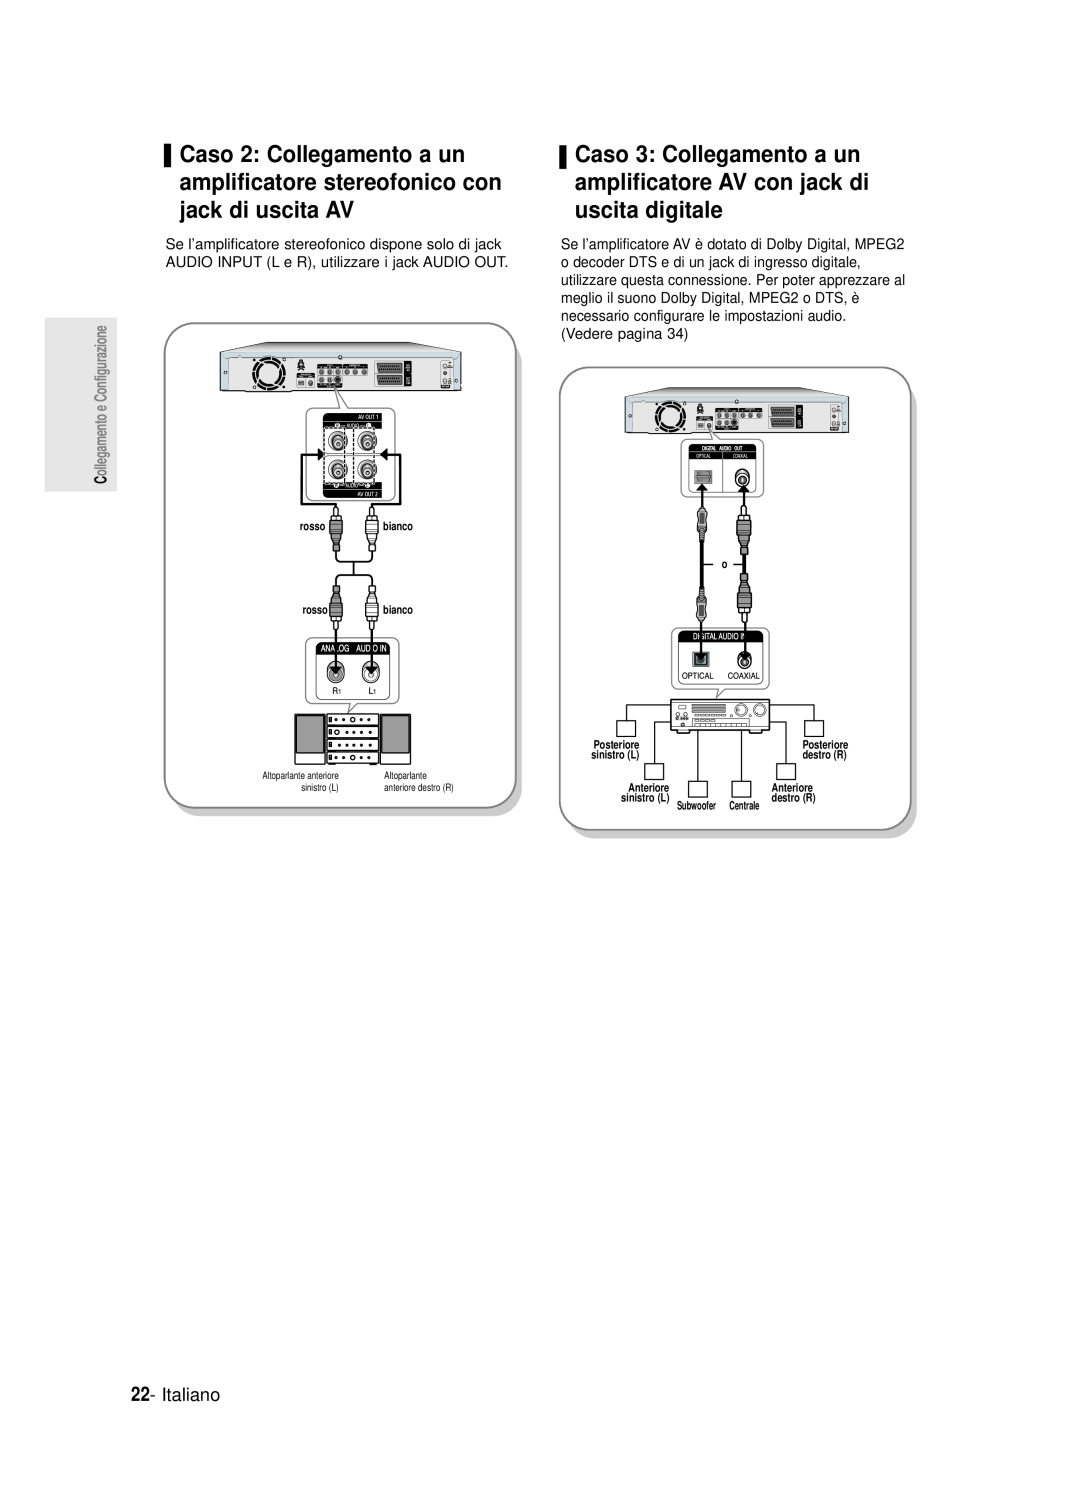 Samsung DVD-R120/XET, DVD-R121E/XEG manual Caso 3 Collegamento a un amplificatore AV con jack di uscita digitale, Italiano 